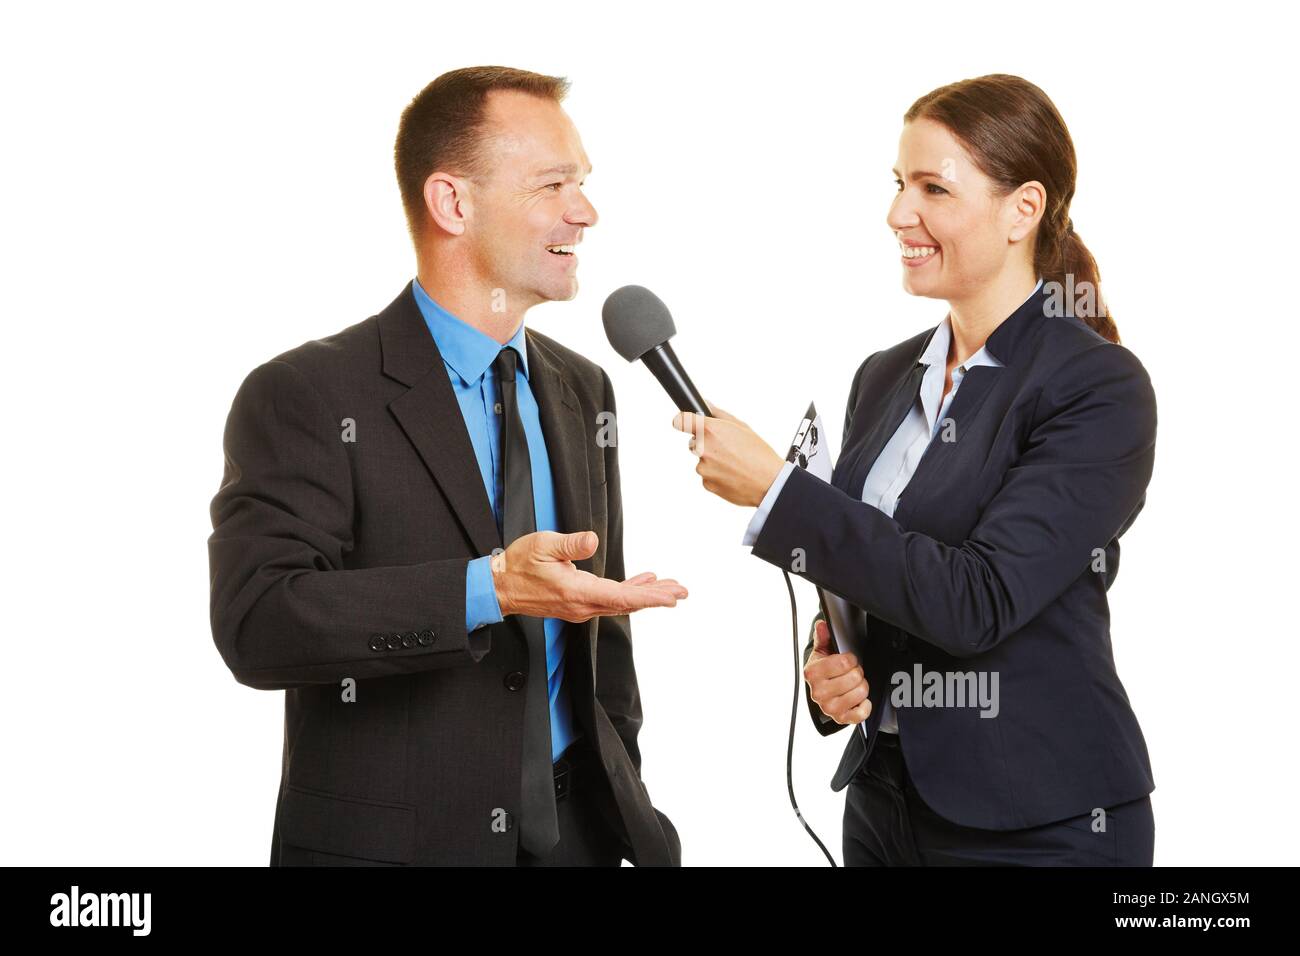 Porte-parole d'une des entrevues avec des membres de la société une journaliste avec un microphone Banque D'Images